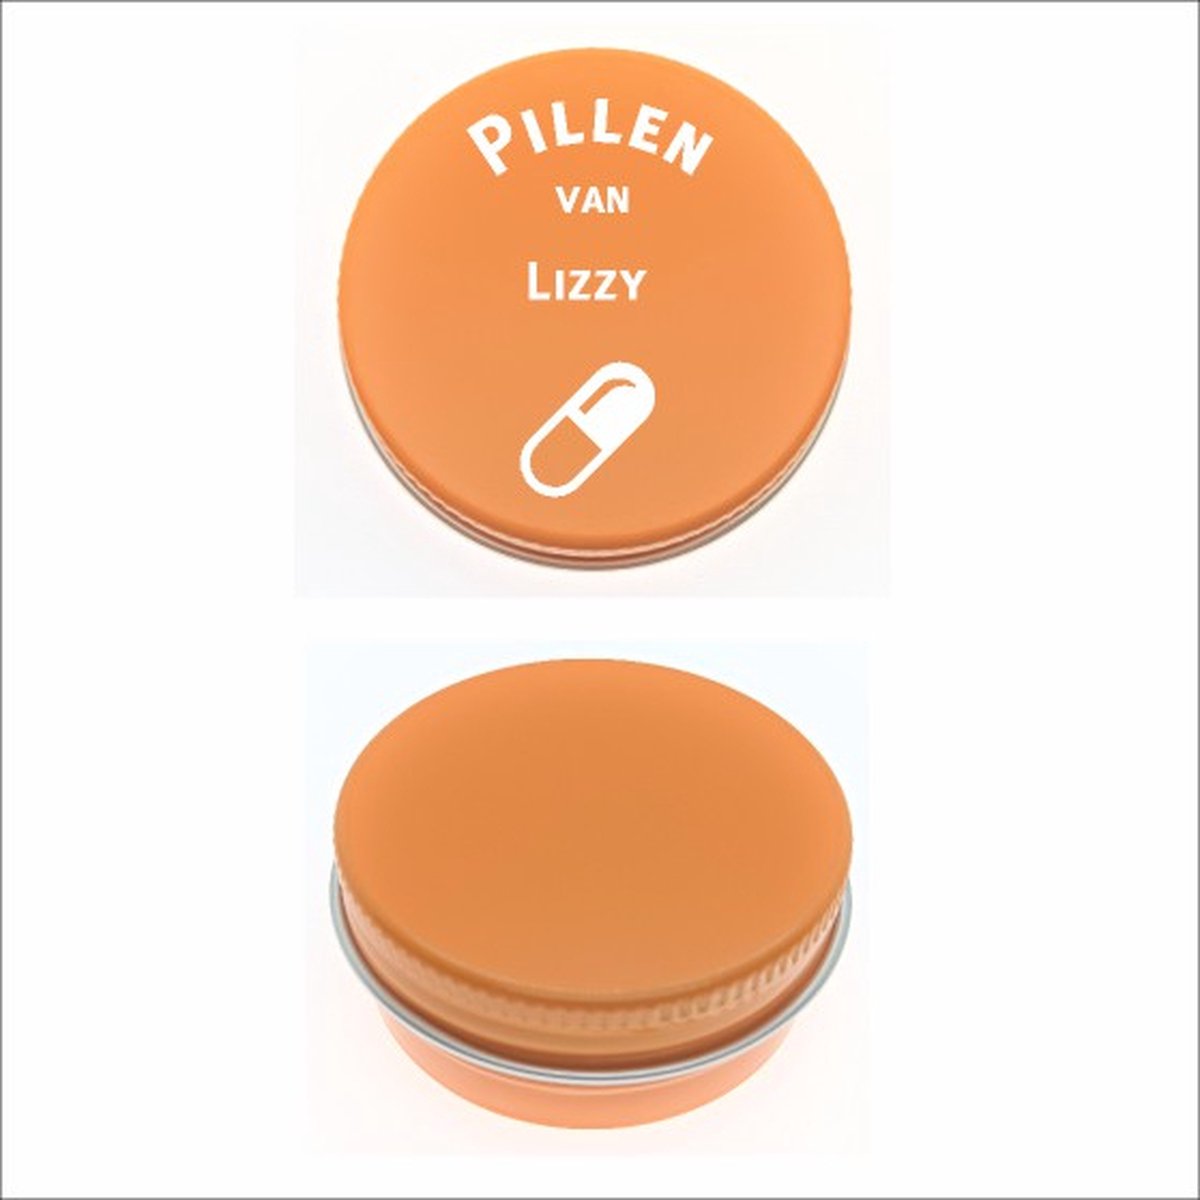 Pillen Blikje Met Naam Gravering - Lizzy